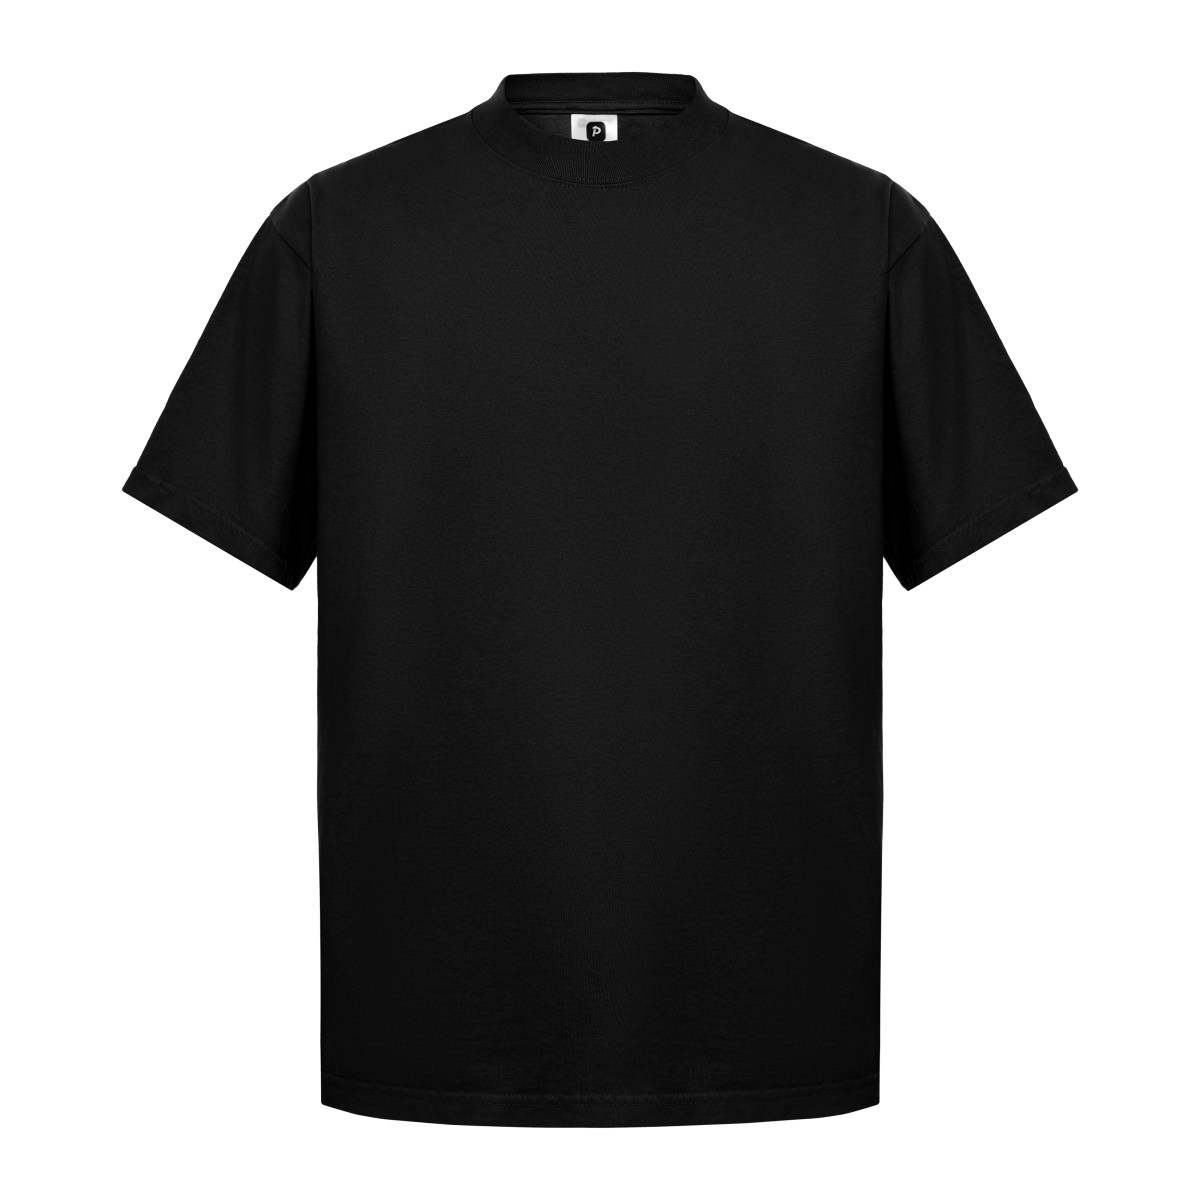 Garment Dye T-Shirt - Standard Size - Black